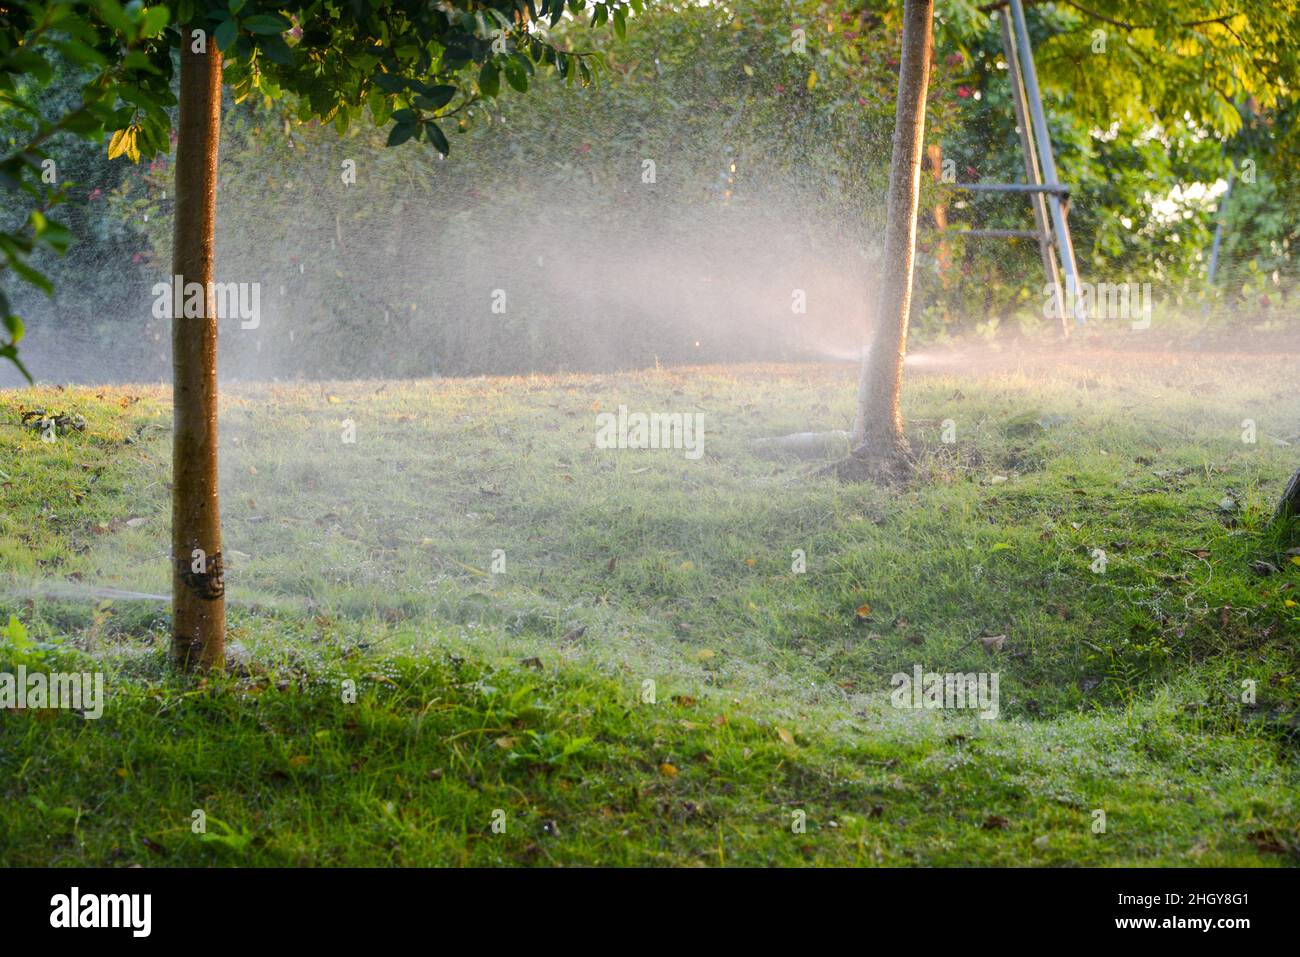 L'irrigation goutte à goutte est utilisée pour arroser les plantes agricoles. Banque D'Images